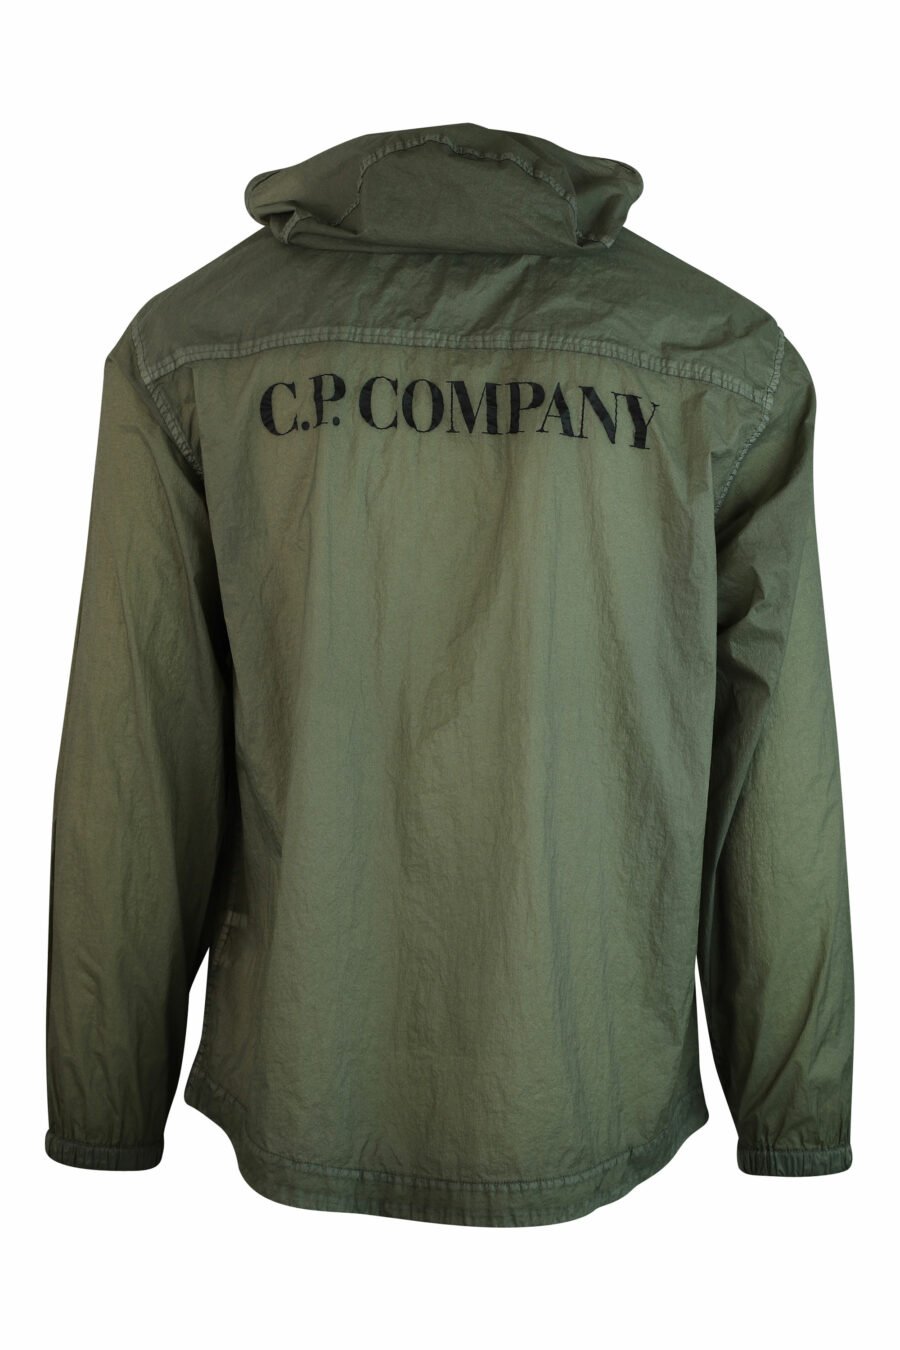 C.P. Company - Veste légère vert militaire avec capuche et logo